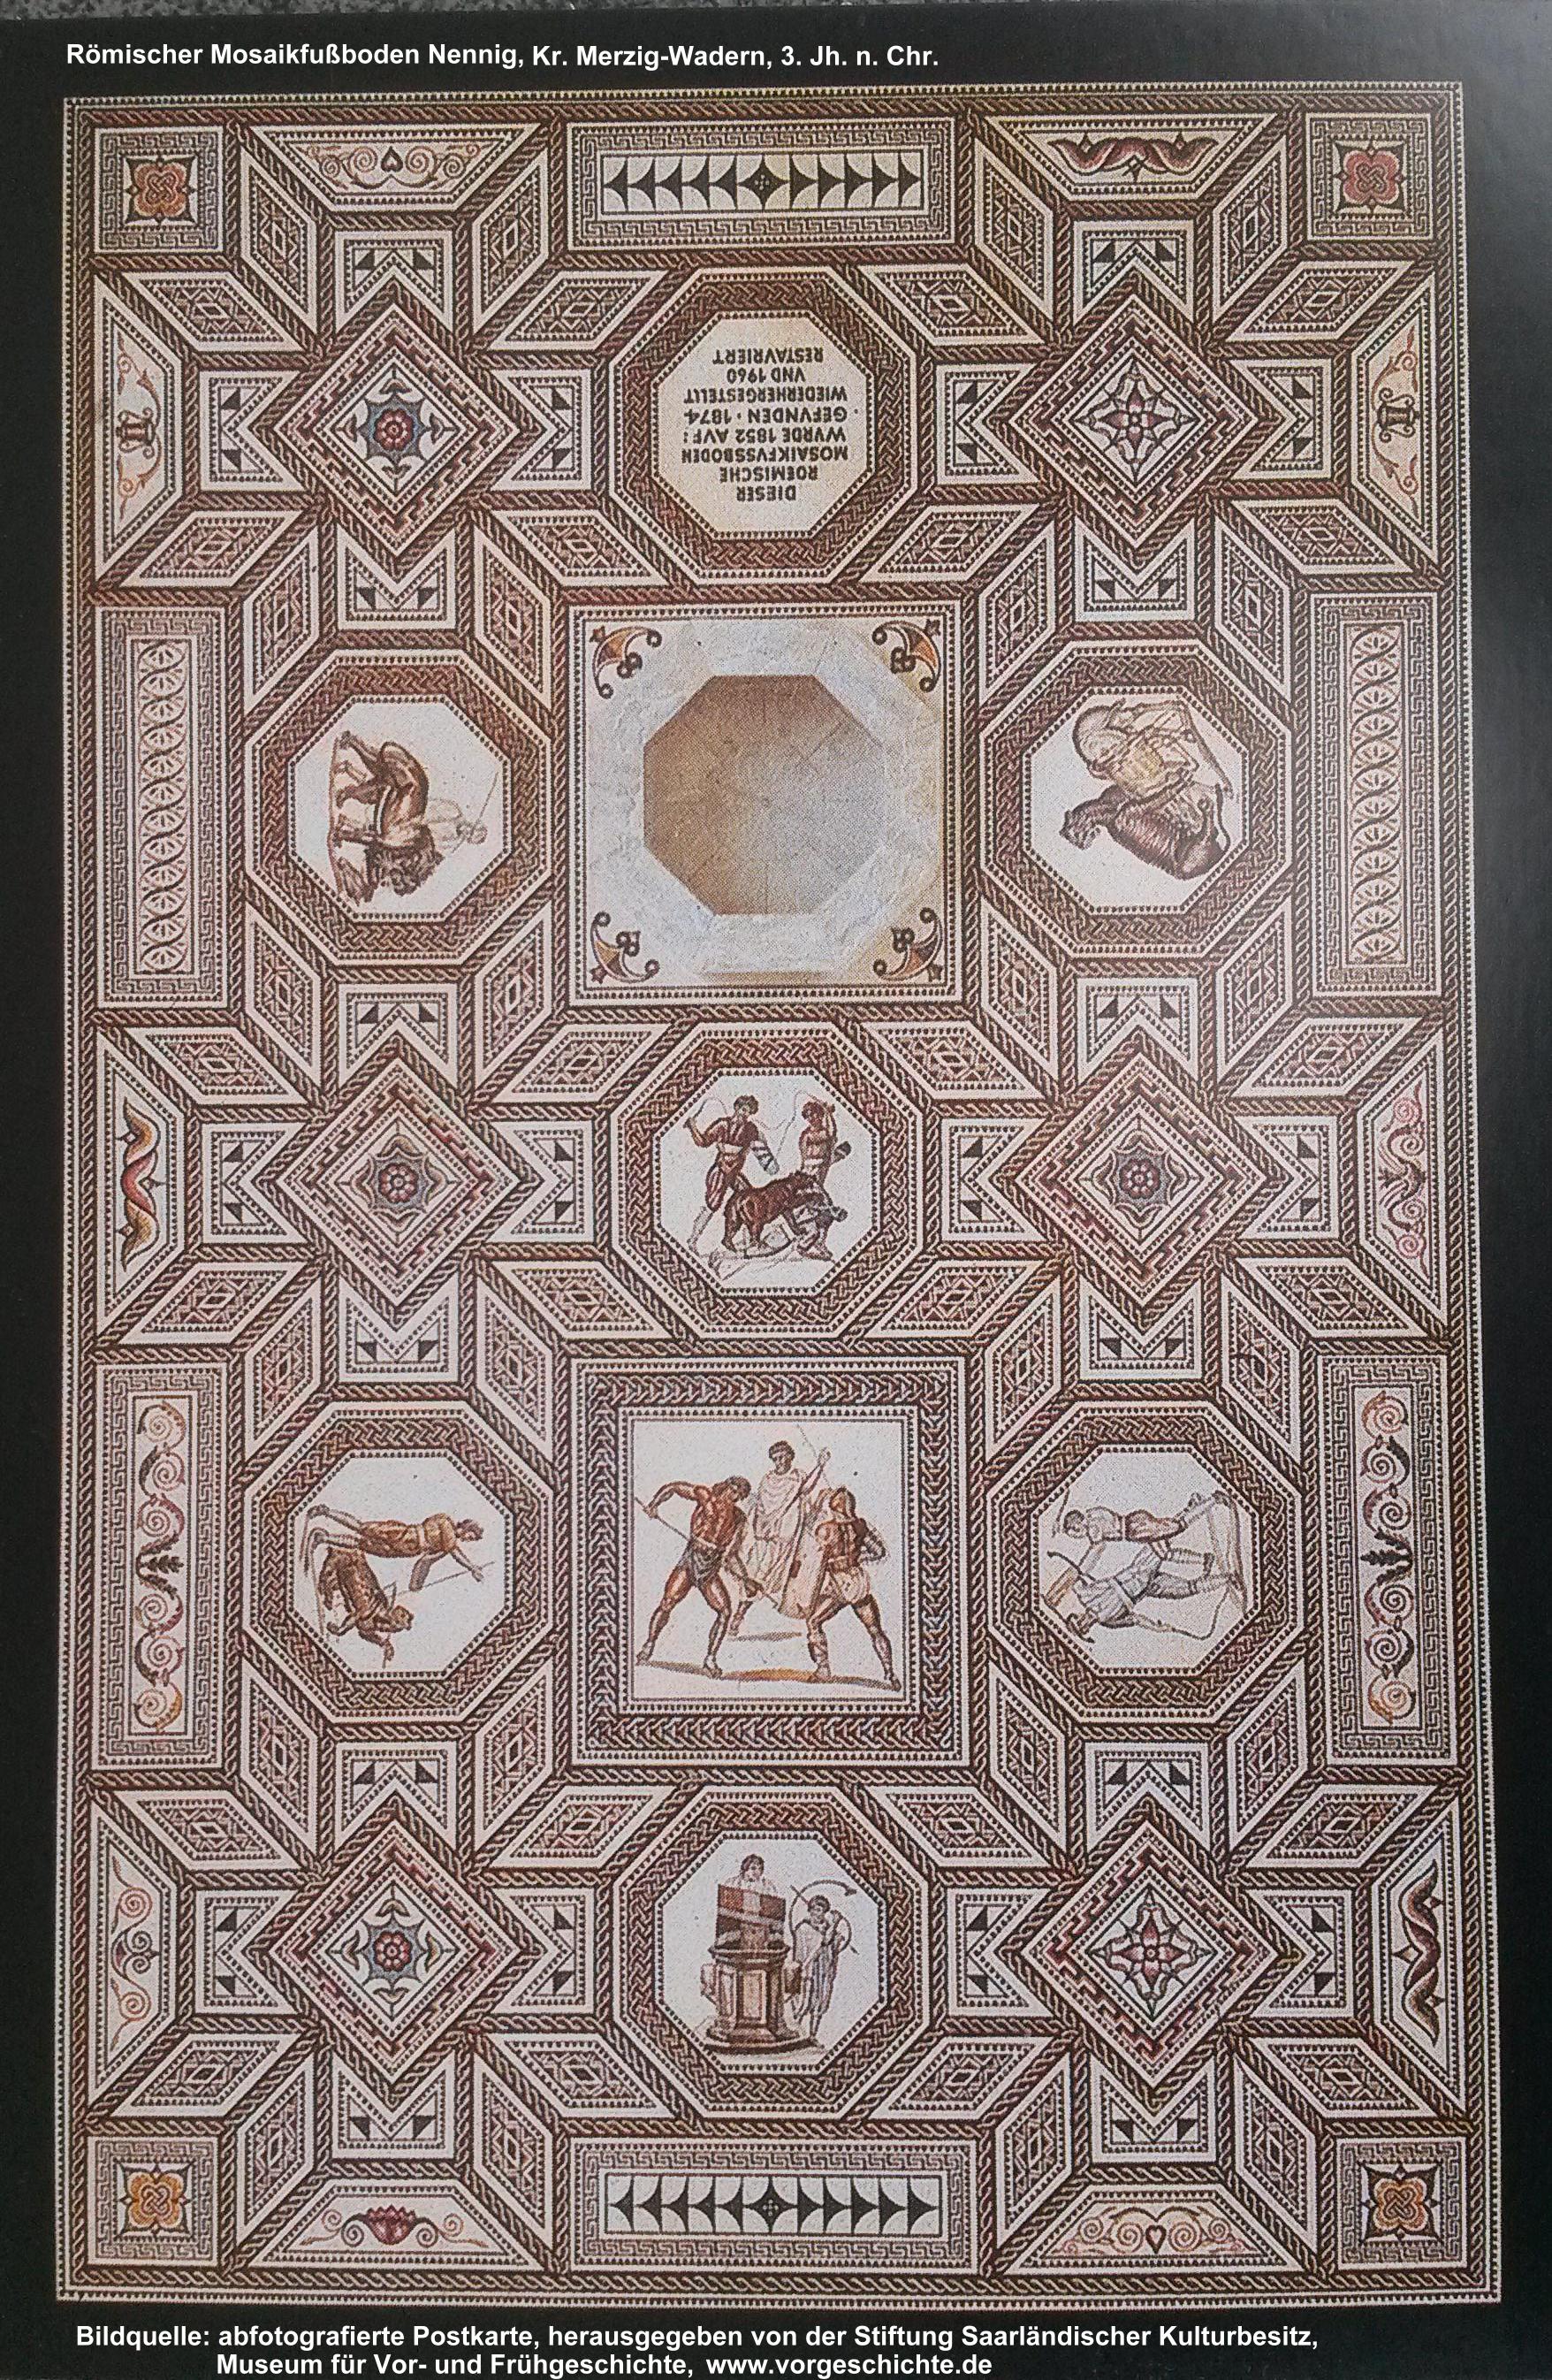 Mosaikfuboden in der Rmischen Villa Nennig, Gesamtbersicht